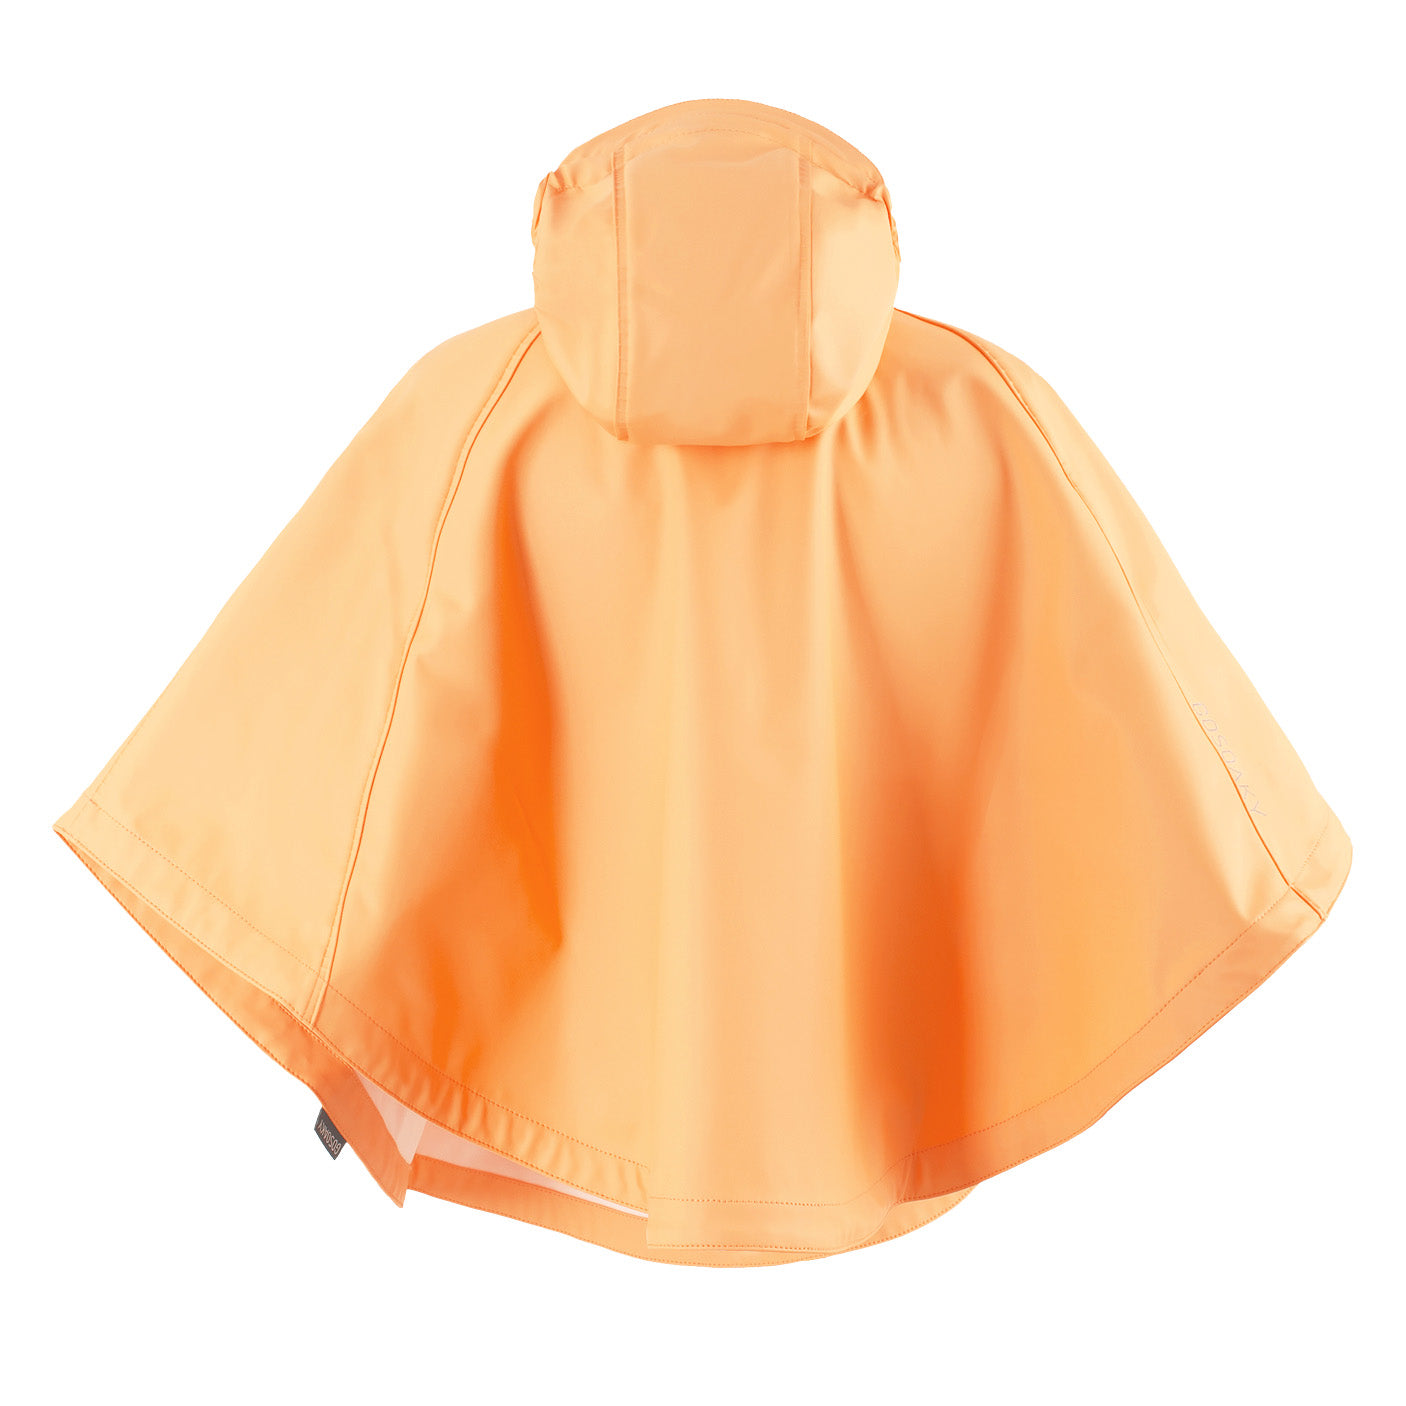 GOSOAKY-CROUCHING-TIGER-Product-Image-rainwear-raincoat-for-kids